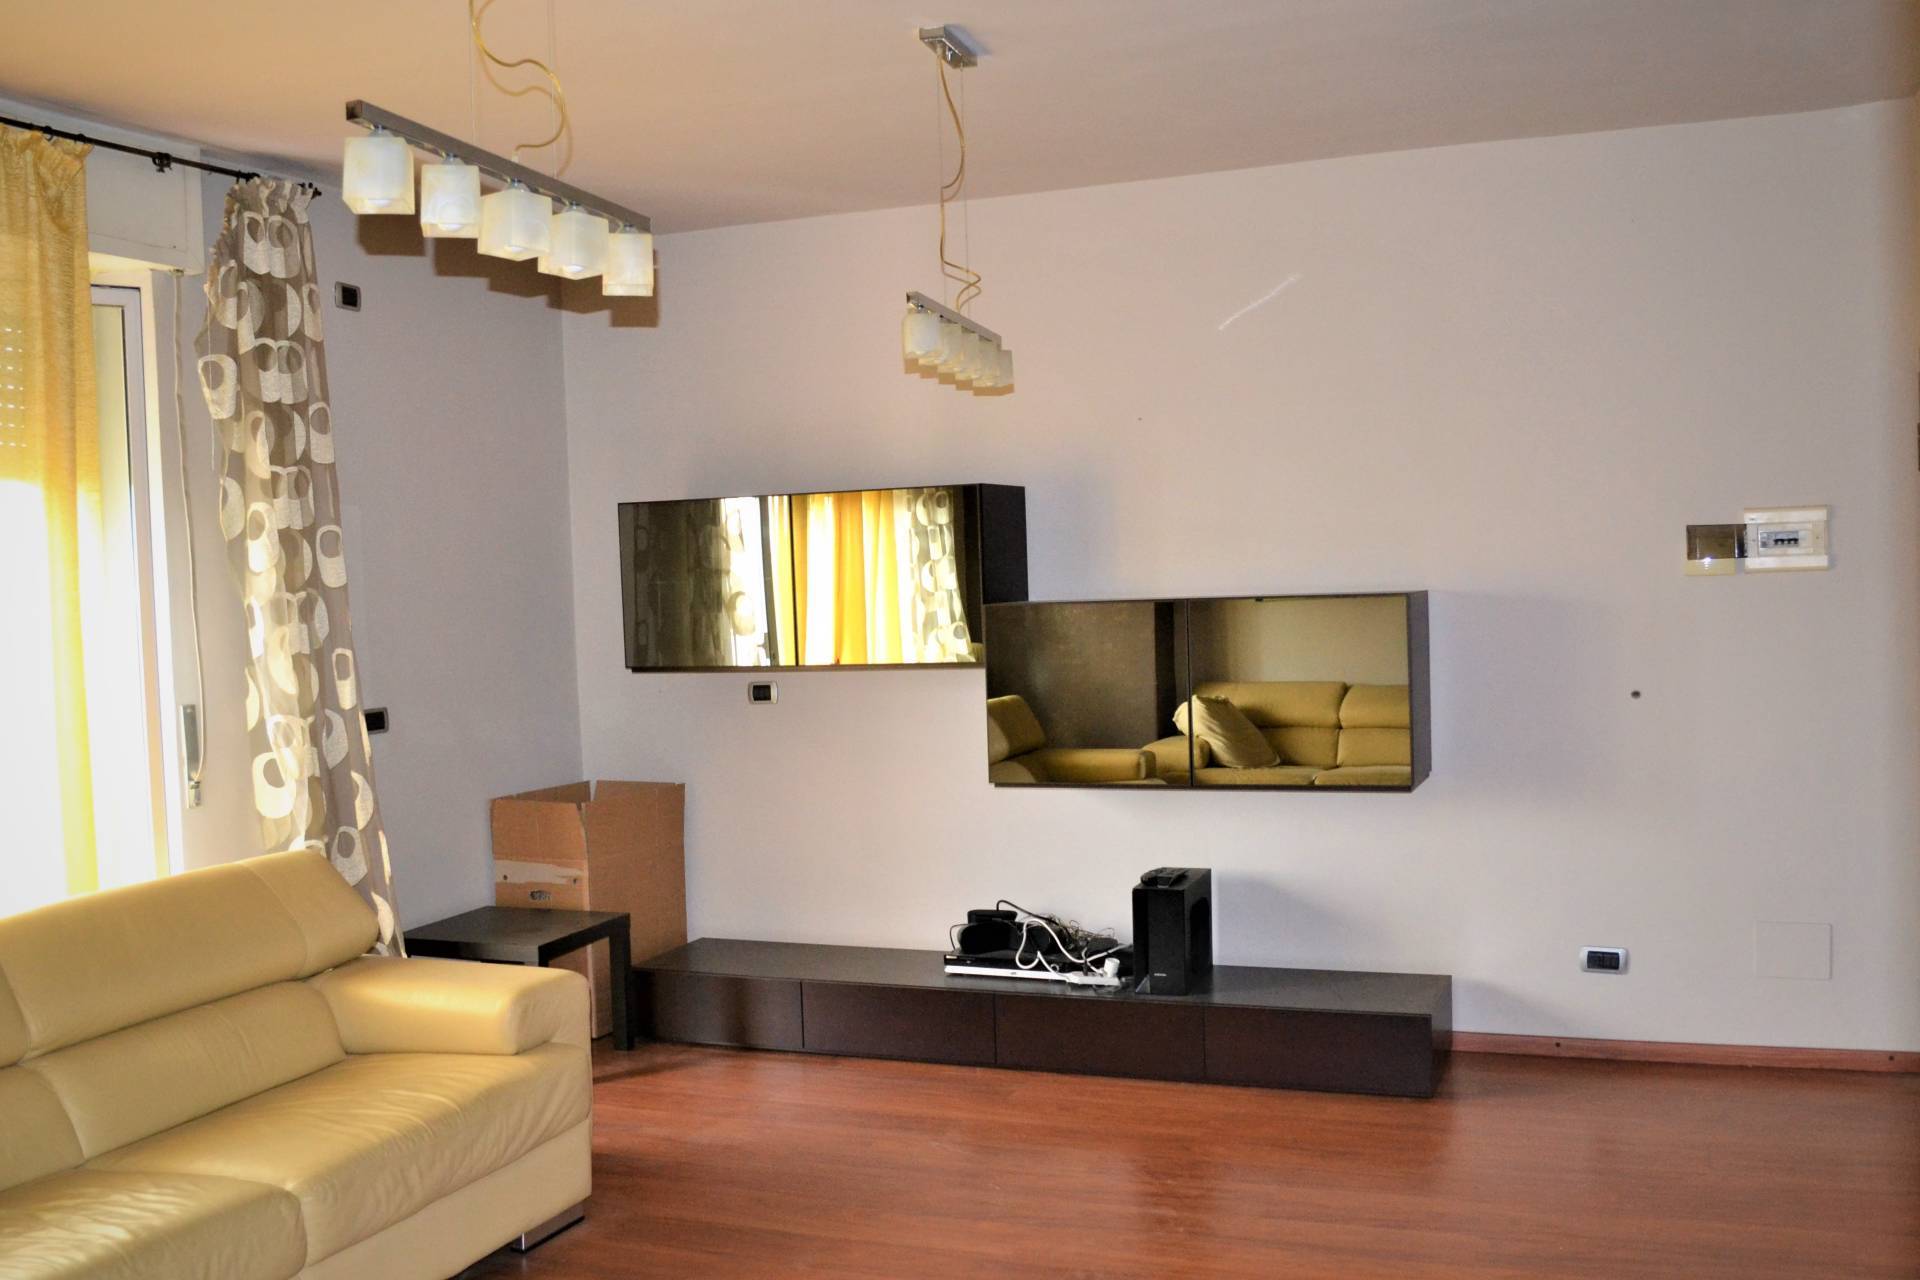 Appartamento in vendita a Pogliano Milanese, 3 locali, prezzo € 155.000 | PortaleAgenzieImmobiliari.it